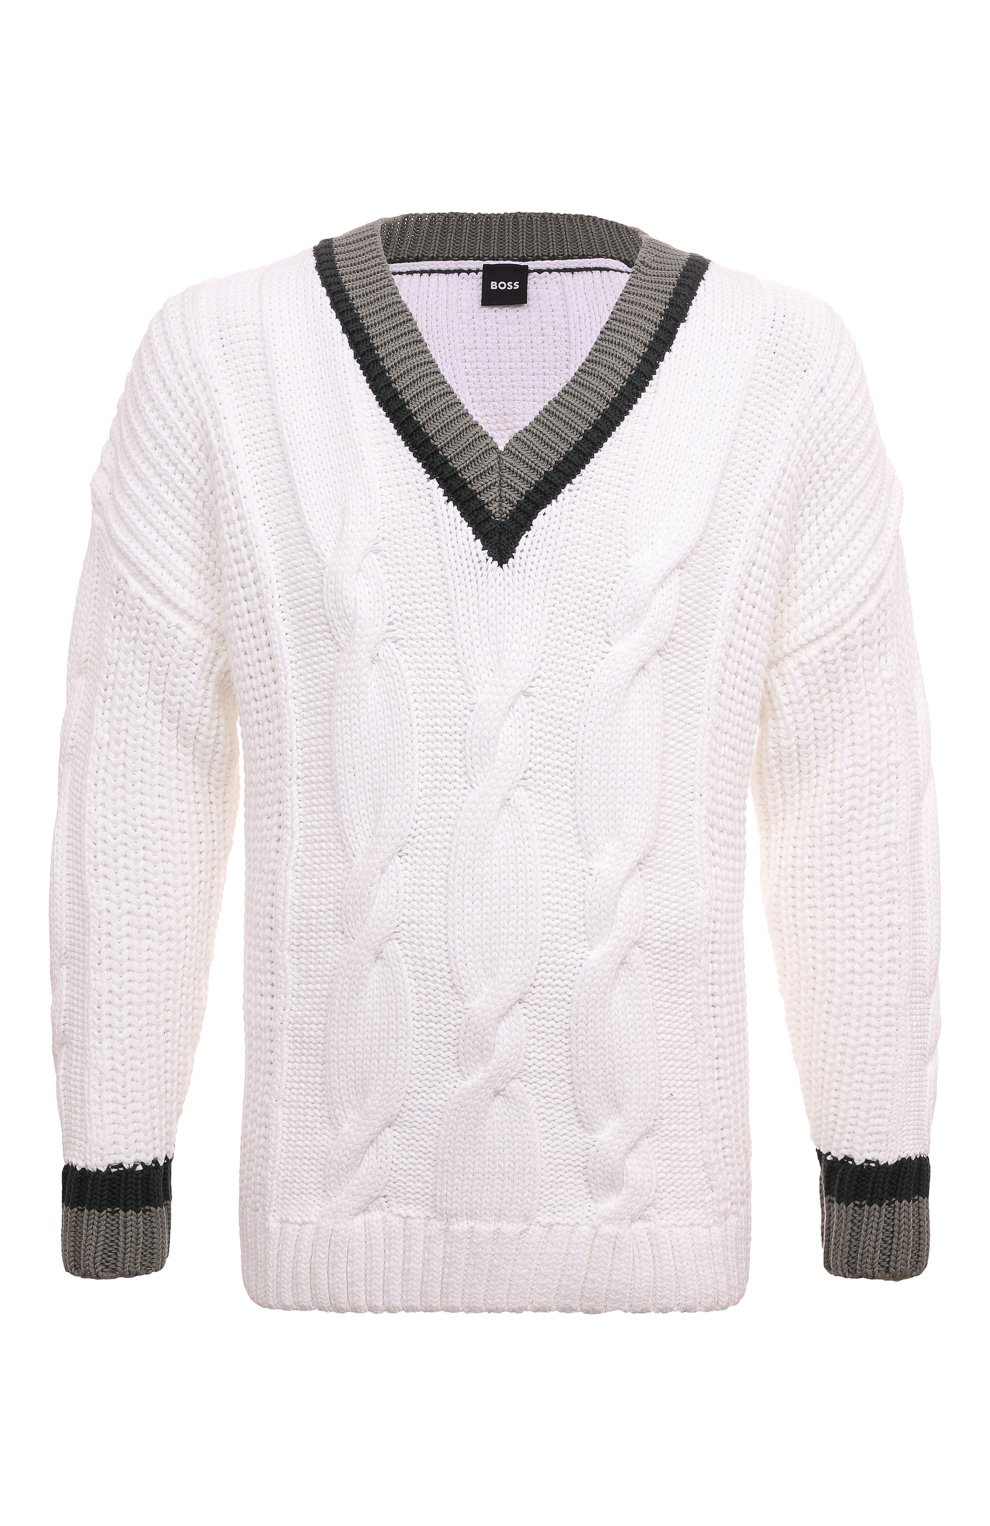 Хлопковый свитер BOSS 50486717, цвет белый, размер 48 - фото 1